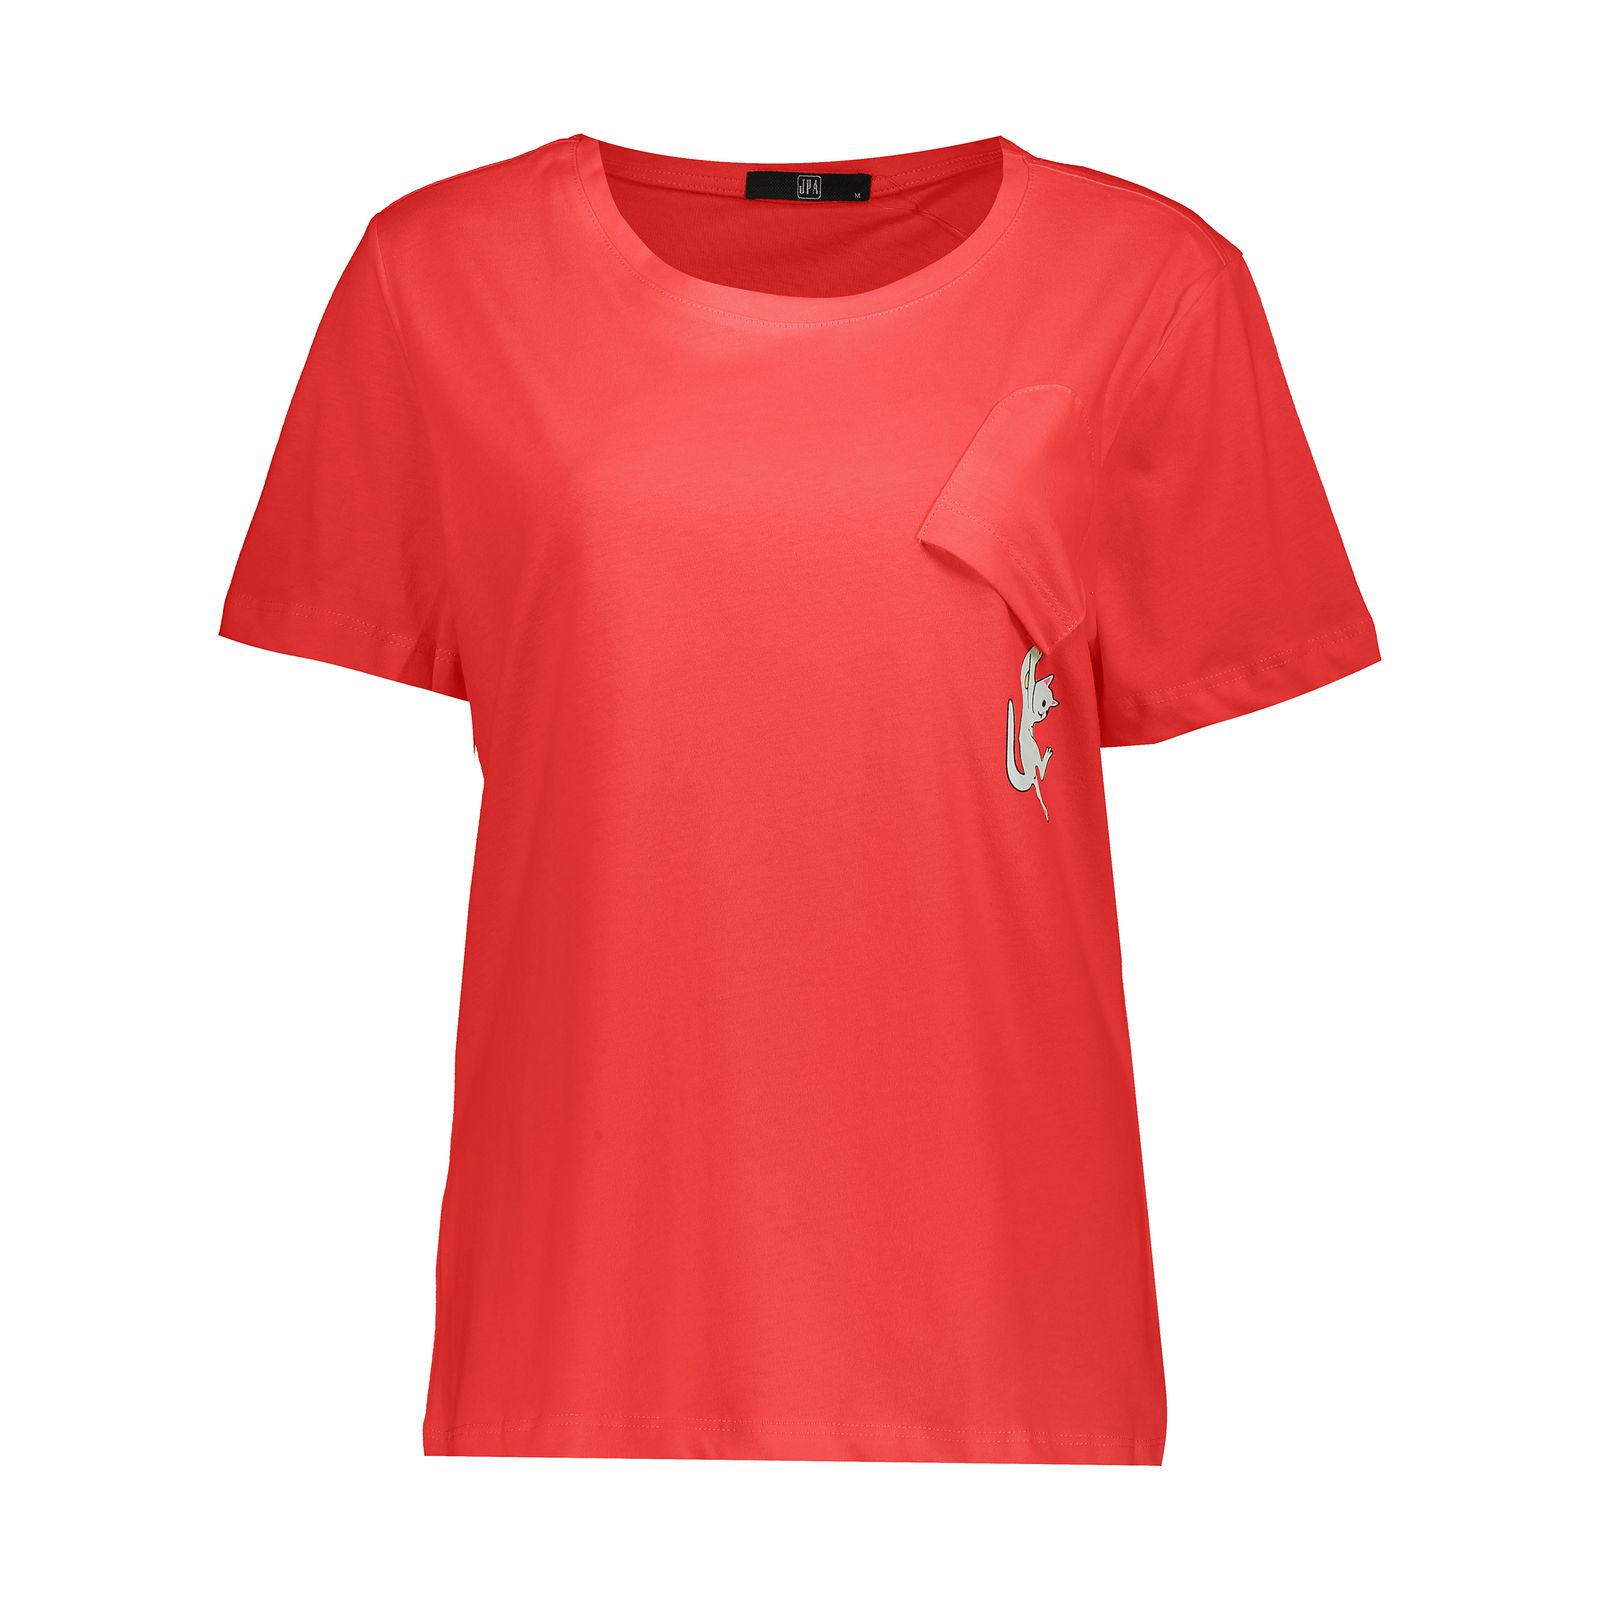 تی شرت زنانه جامه پوش آرا مدل 4012018382-72 -  - 1